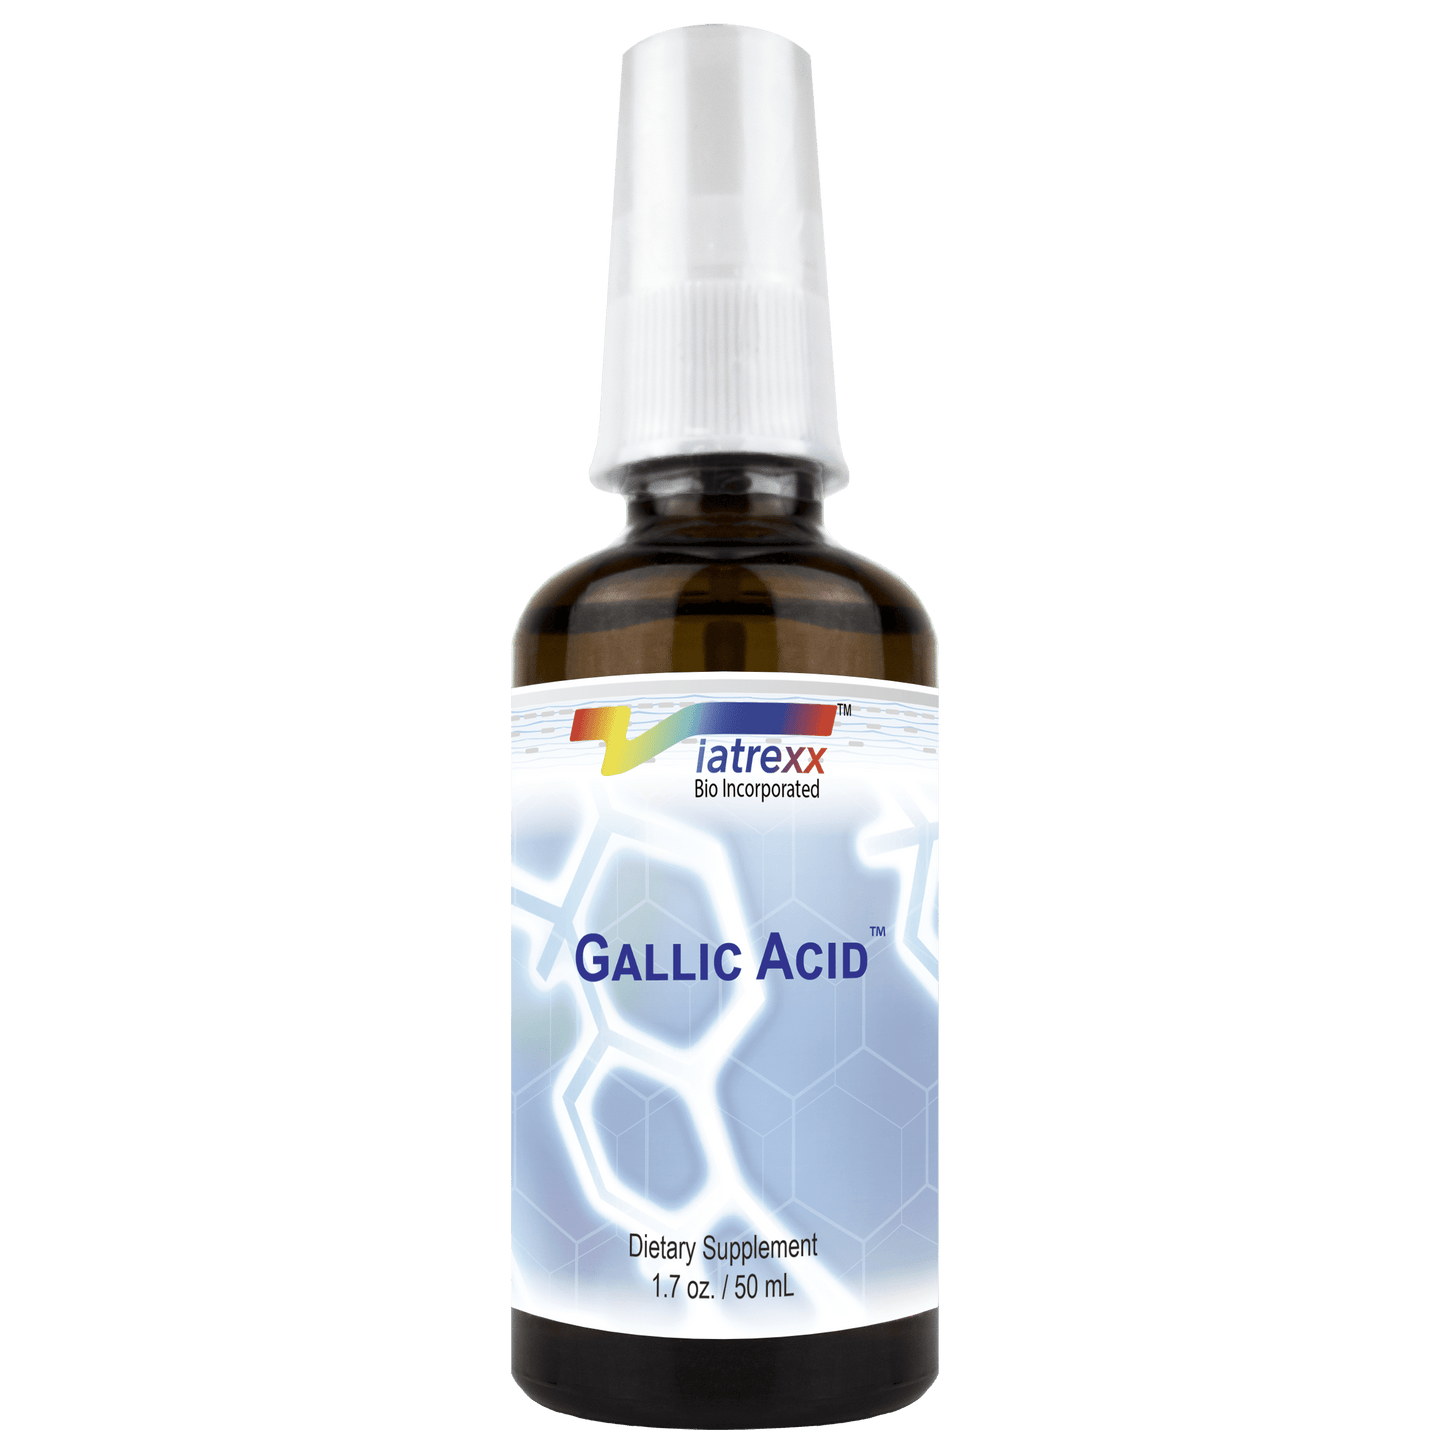 Gallic Acid by Viatrexx